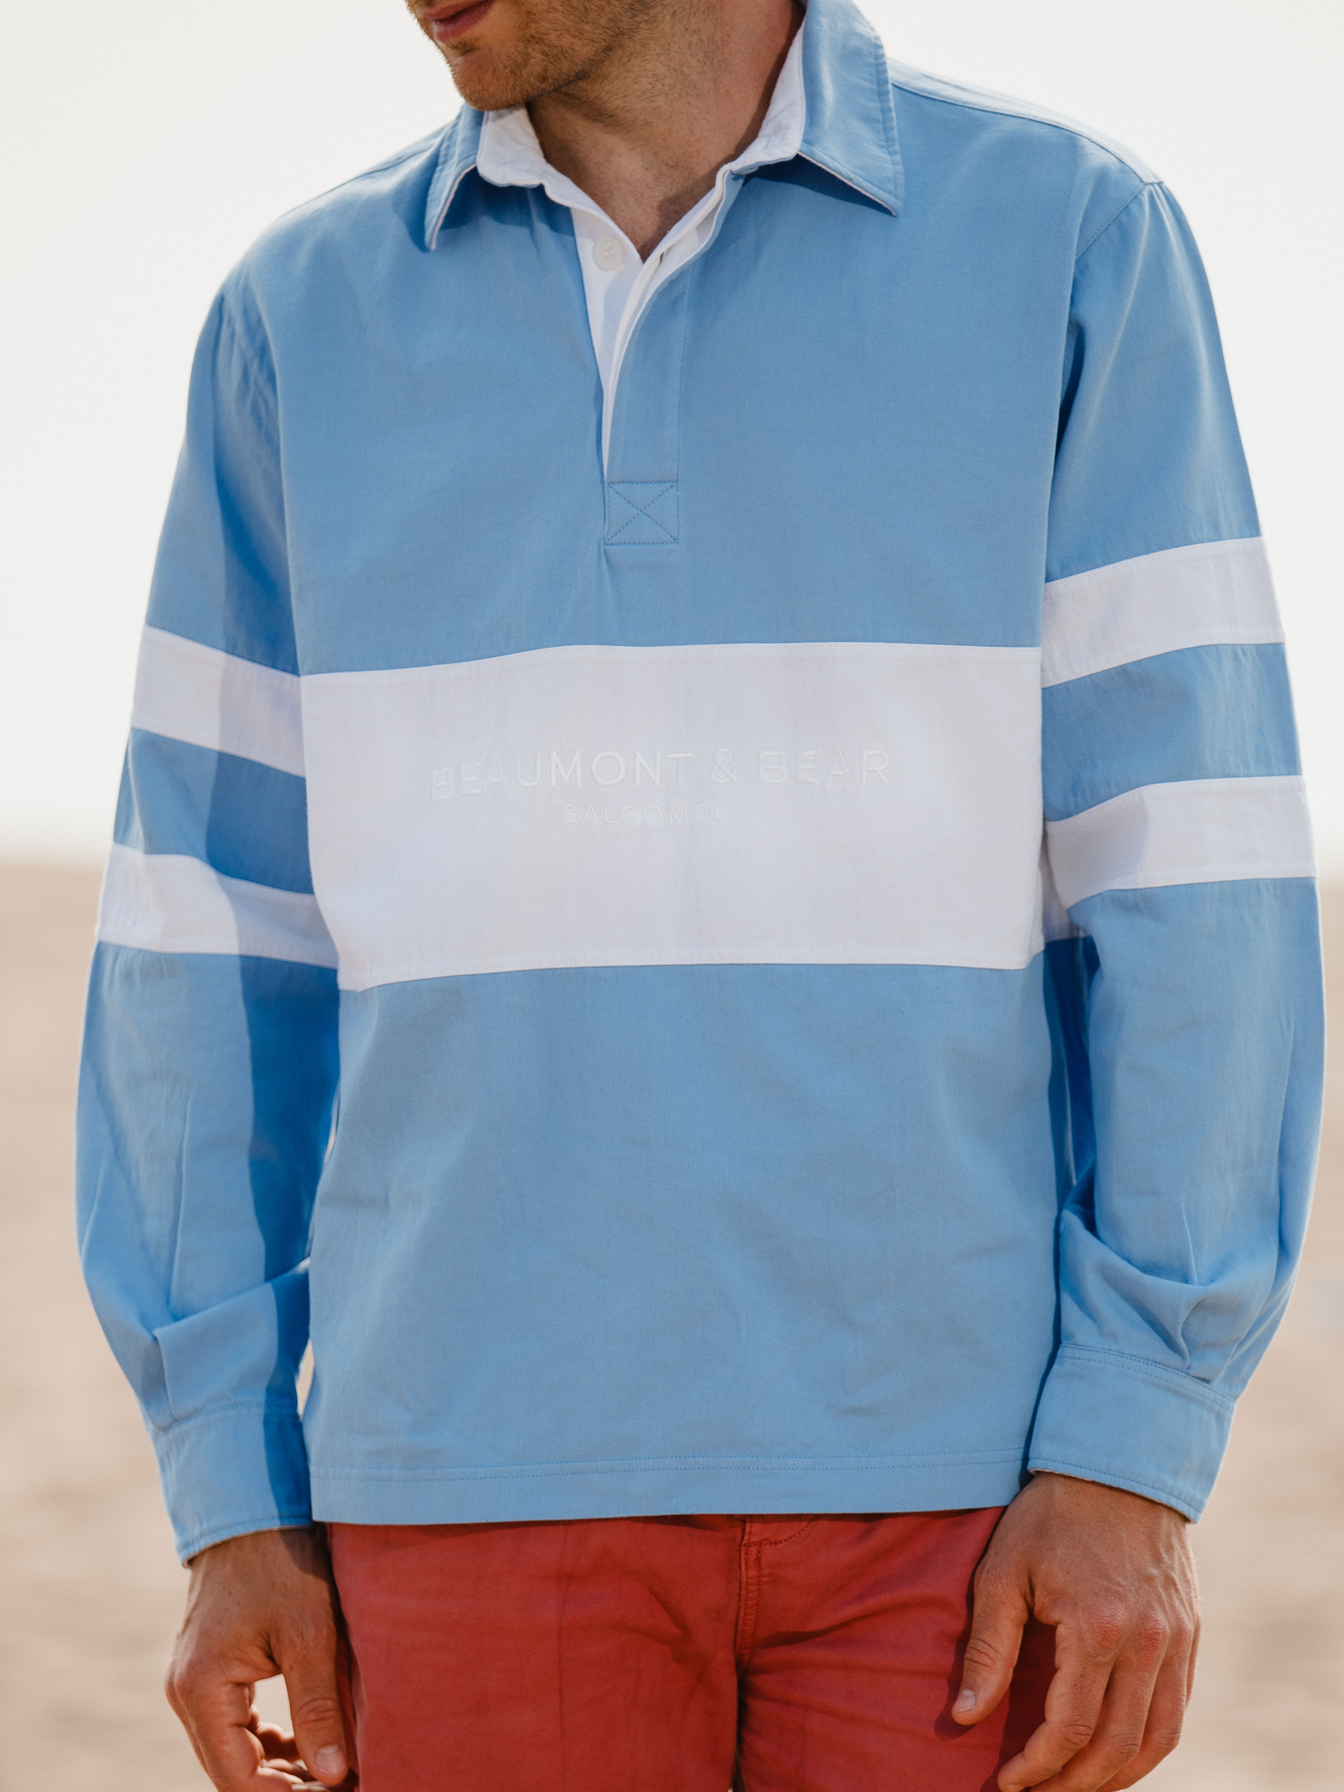 Sandhills Unisex Deck Shirt - Cornflower Blue